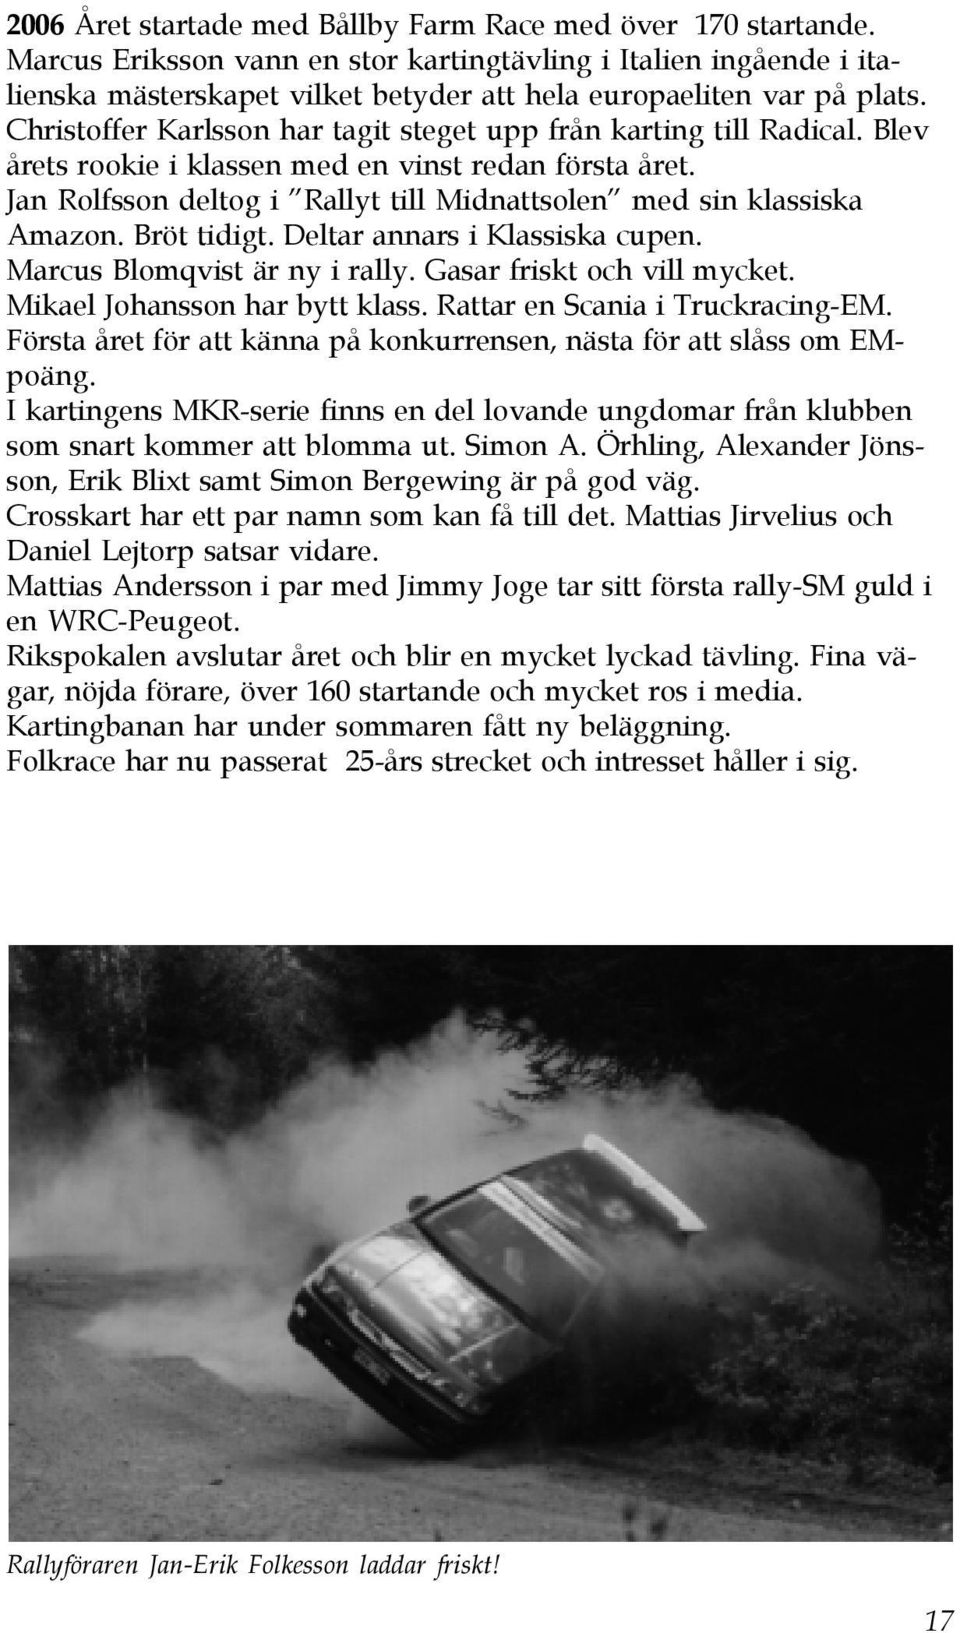 Christoffer Karlsson har tagit steget upp från karting till Radical. Blev årets rookie i klassen med en vinst redan första året.